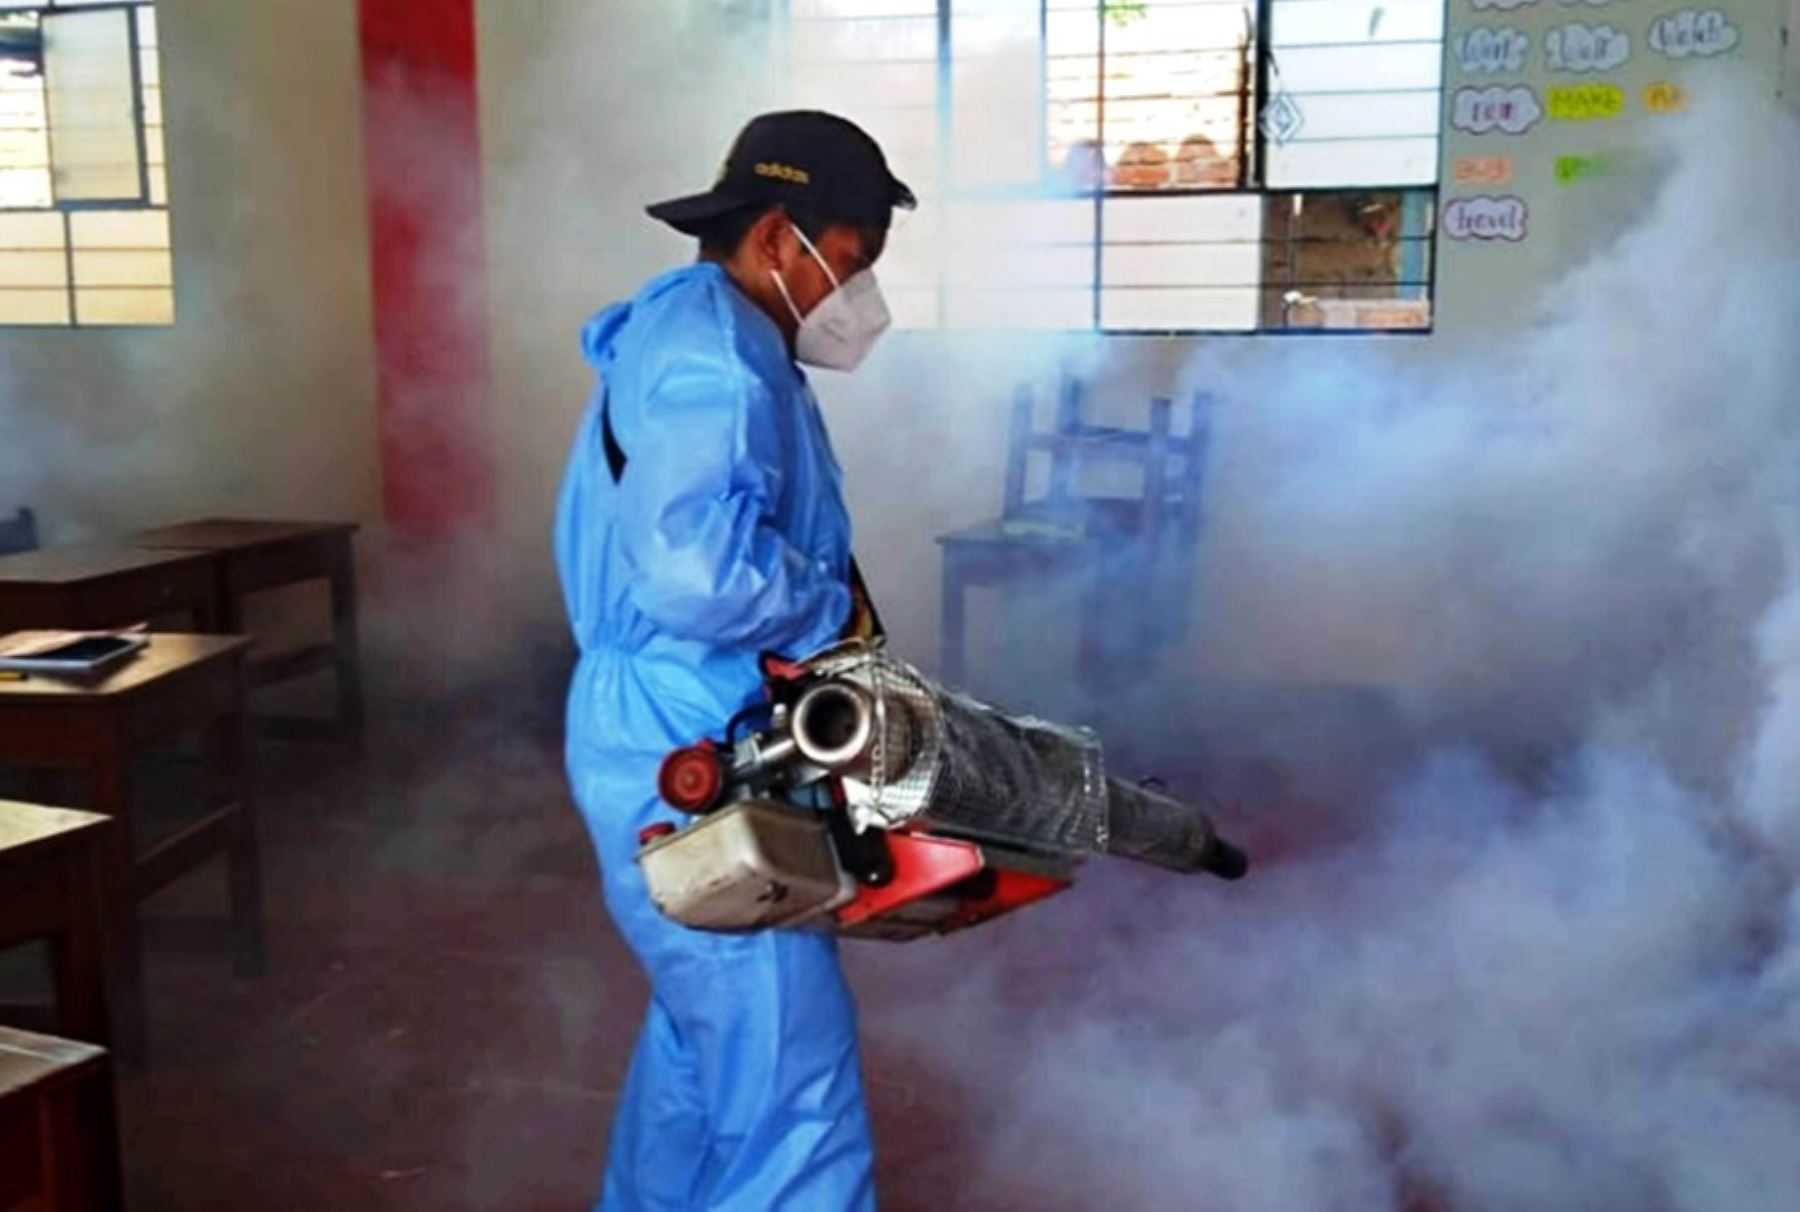 El distrito cajamarquino de Magdalena registra un incremento considerable de infectados por dengue. De 30 casos reportados la semana pasada, aumentó a 40 esta semana, informó la oficina de Epidemiología de la Dirección Regional de Salud (Diresa), al revelar que en todo el departamento suman 700 casos en lo que va del año.